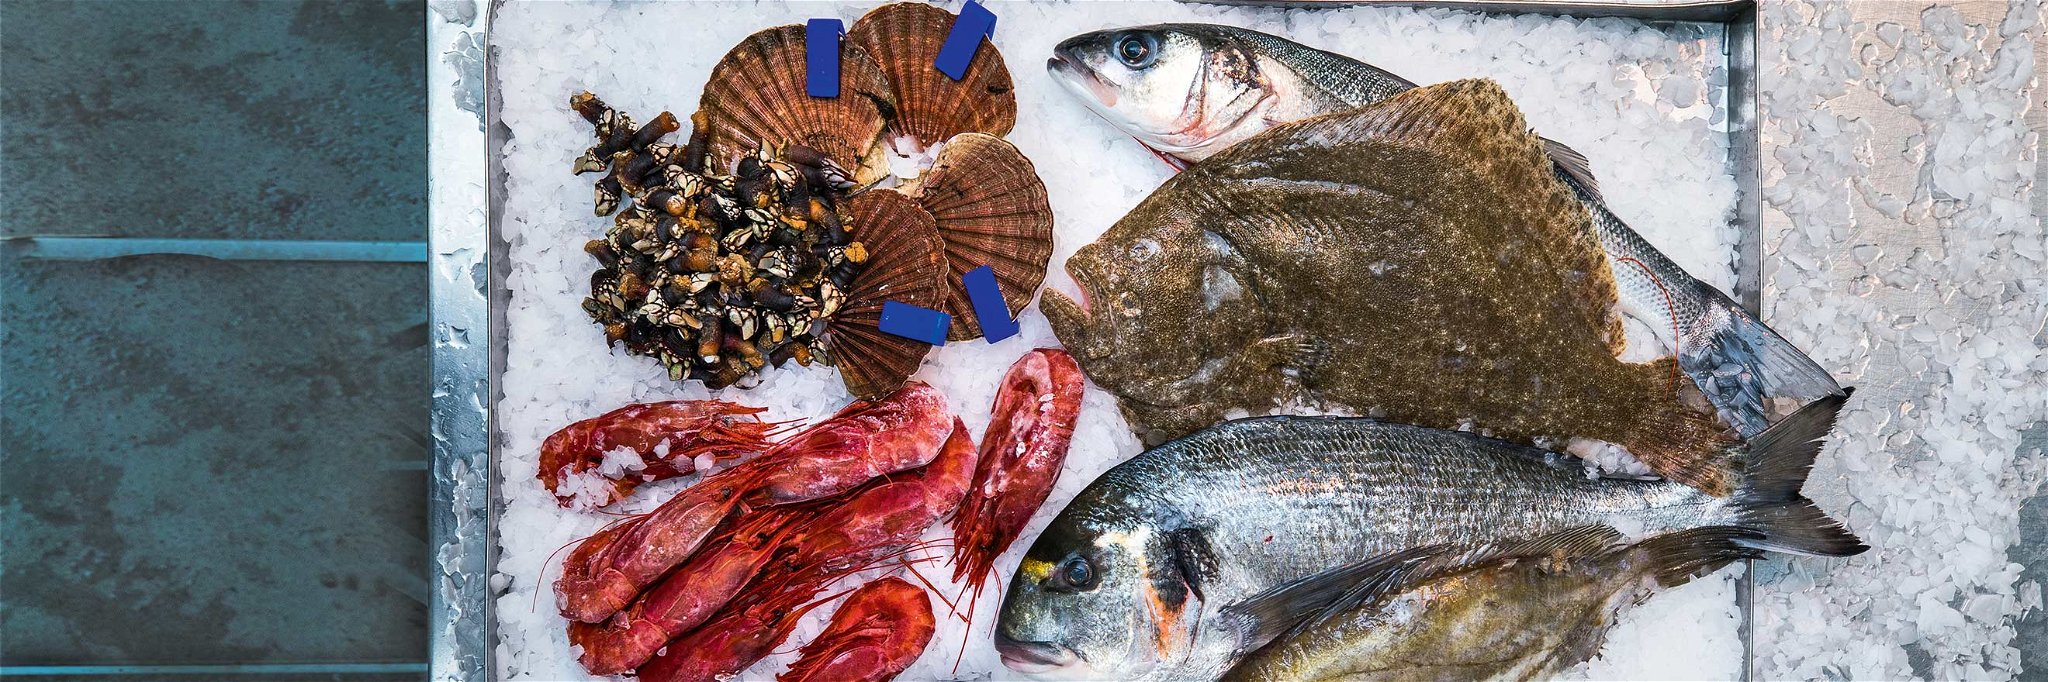 Das kulinarische Angebot aus den Weltmeeren könnte punkto Geschmack und Biss kaum vielfältiger sein.